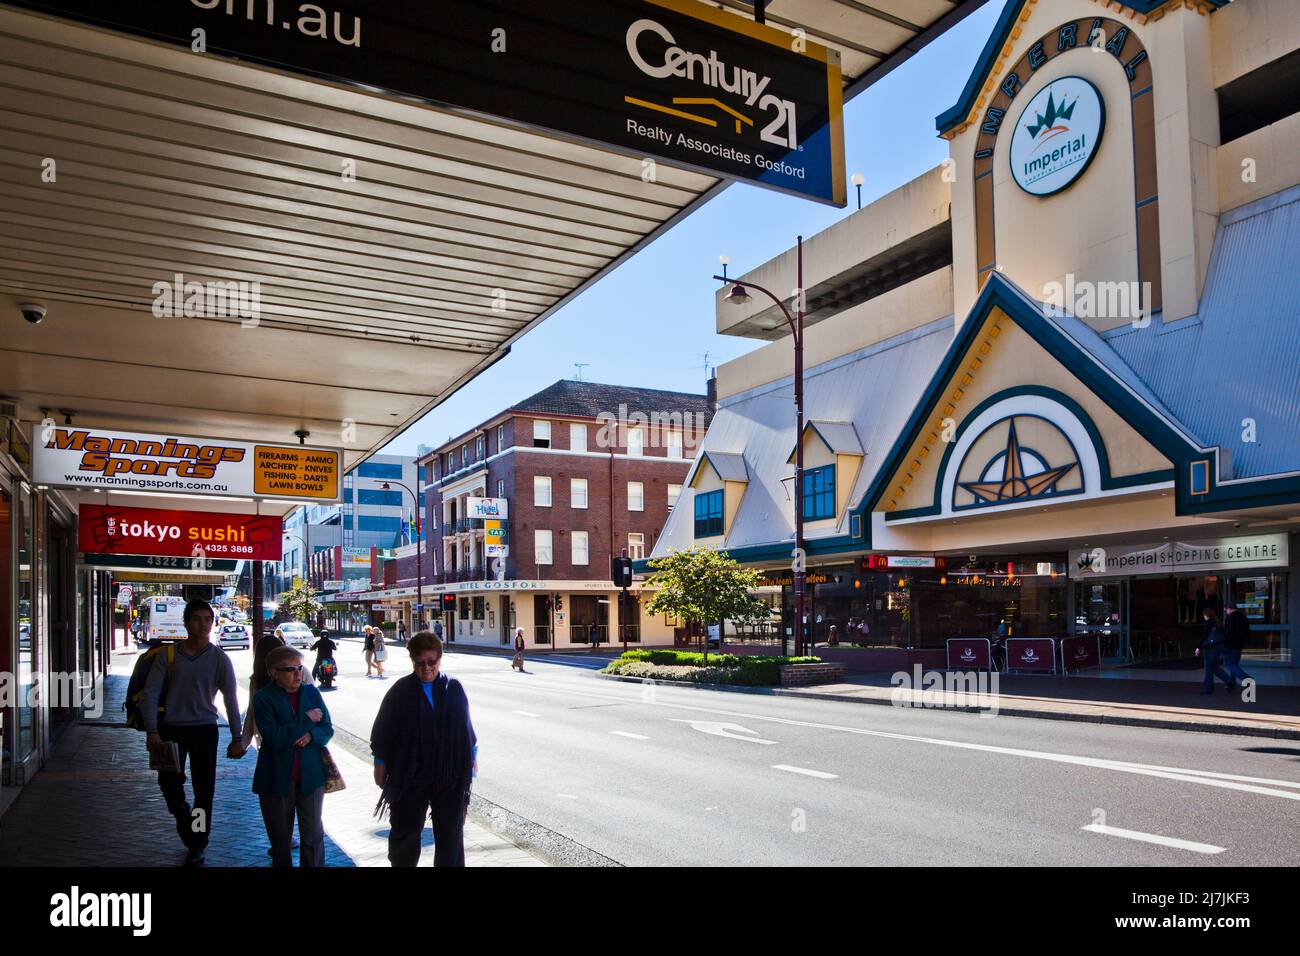 Australia, Nueva Gales del Sur, Costa Central, Gosford, vista de la calle Mann y del centro comercial imperial Foto de stock